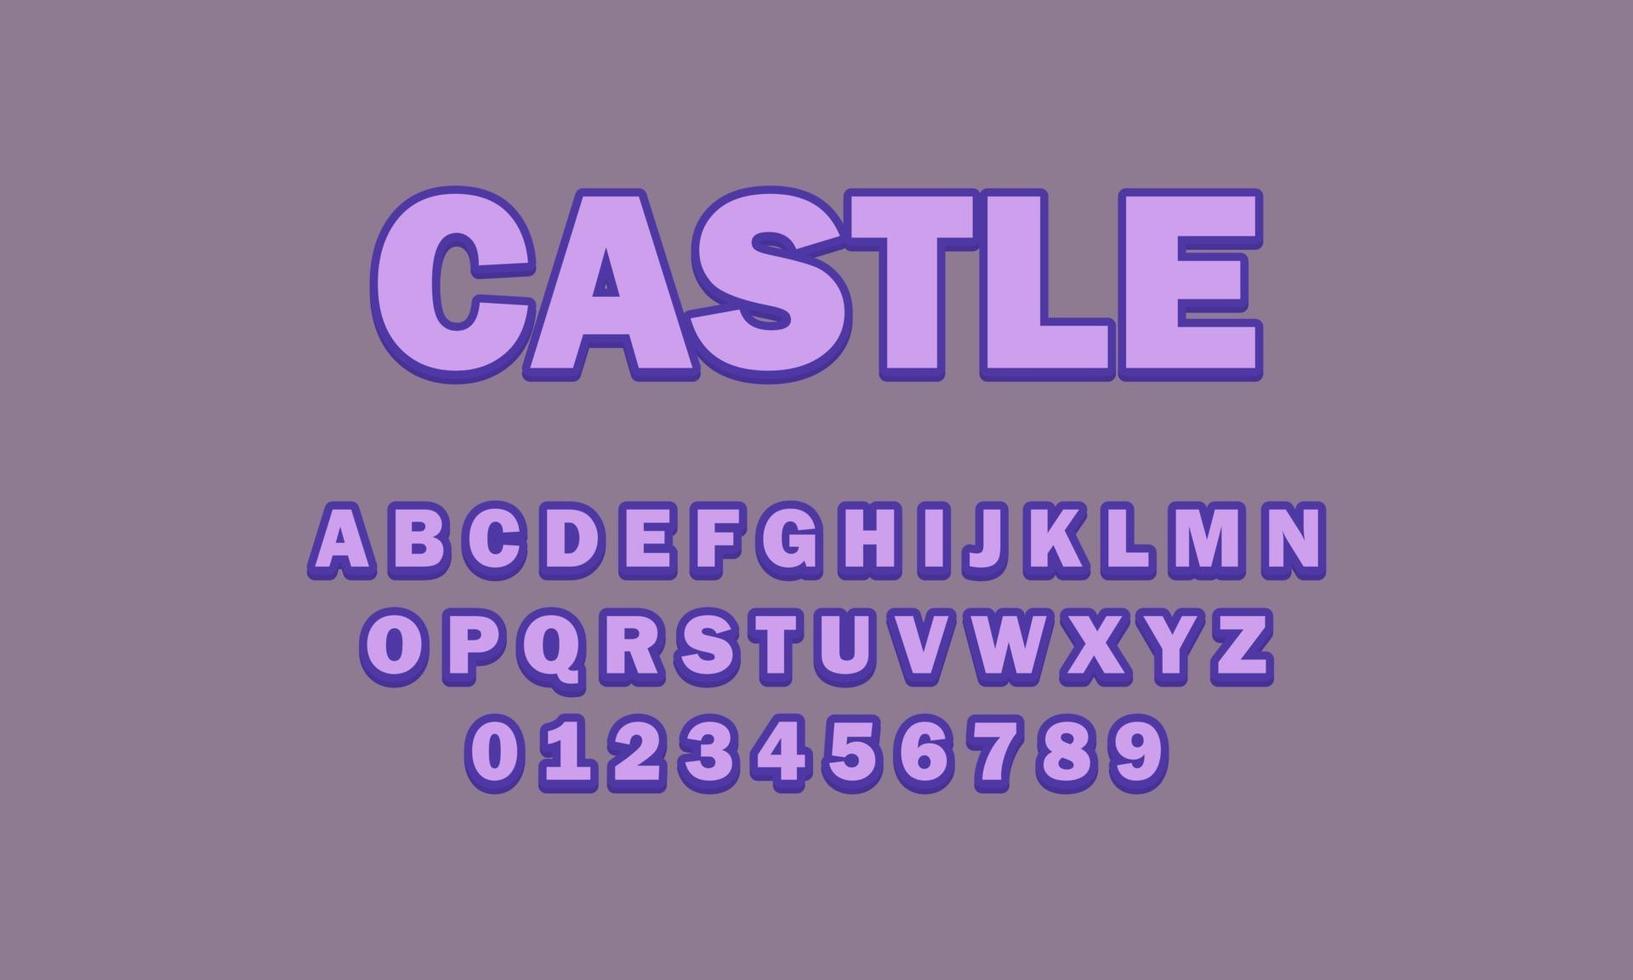 kasteel lettertype alfabet vector